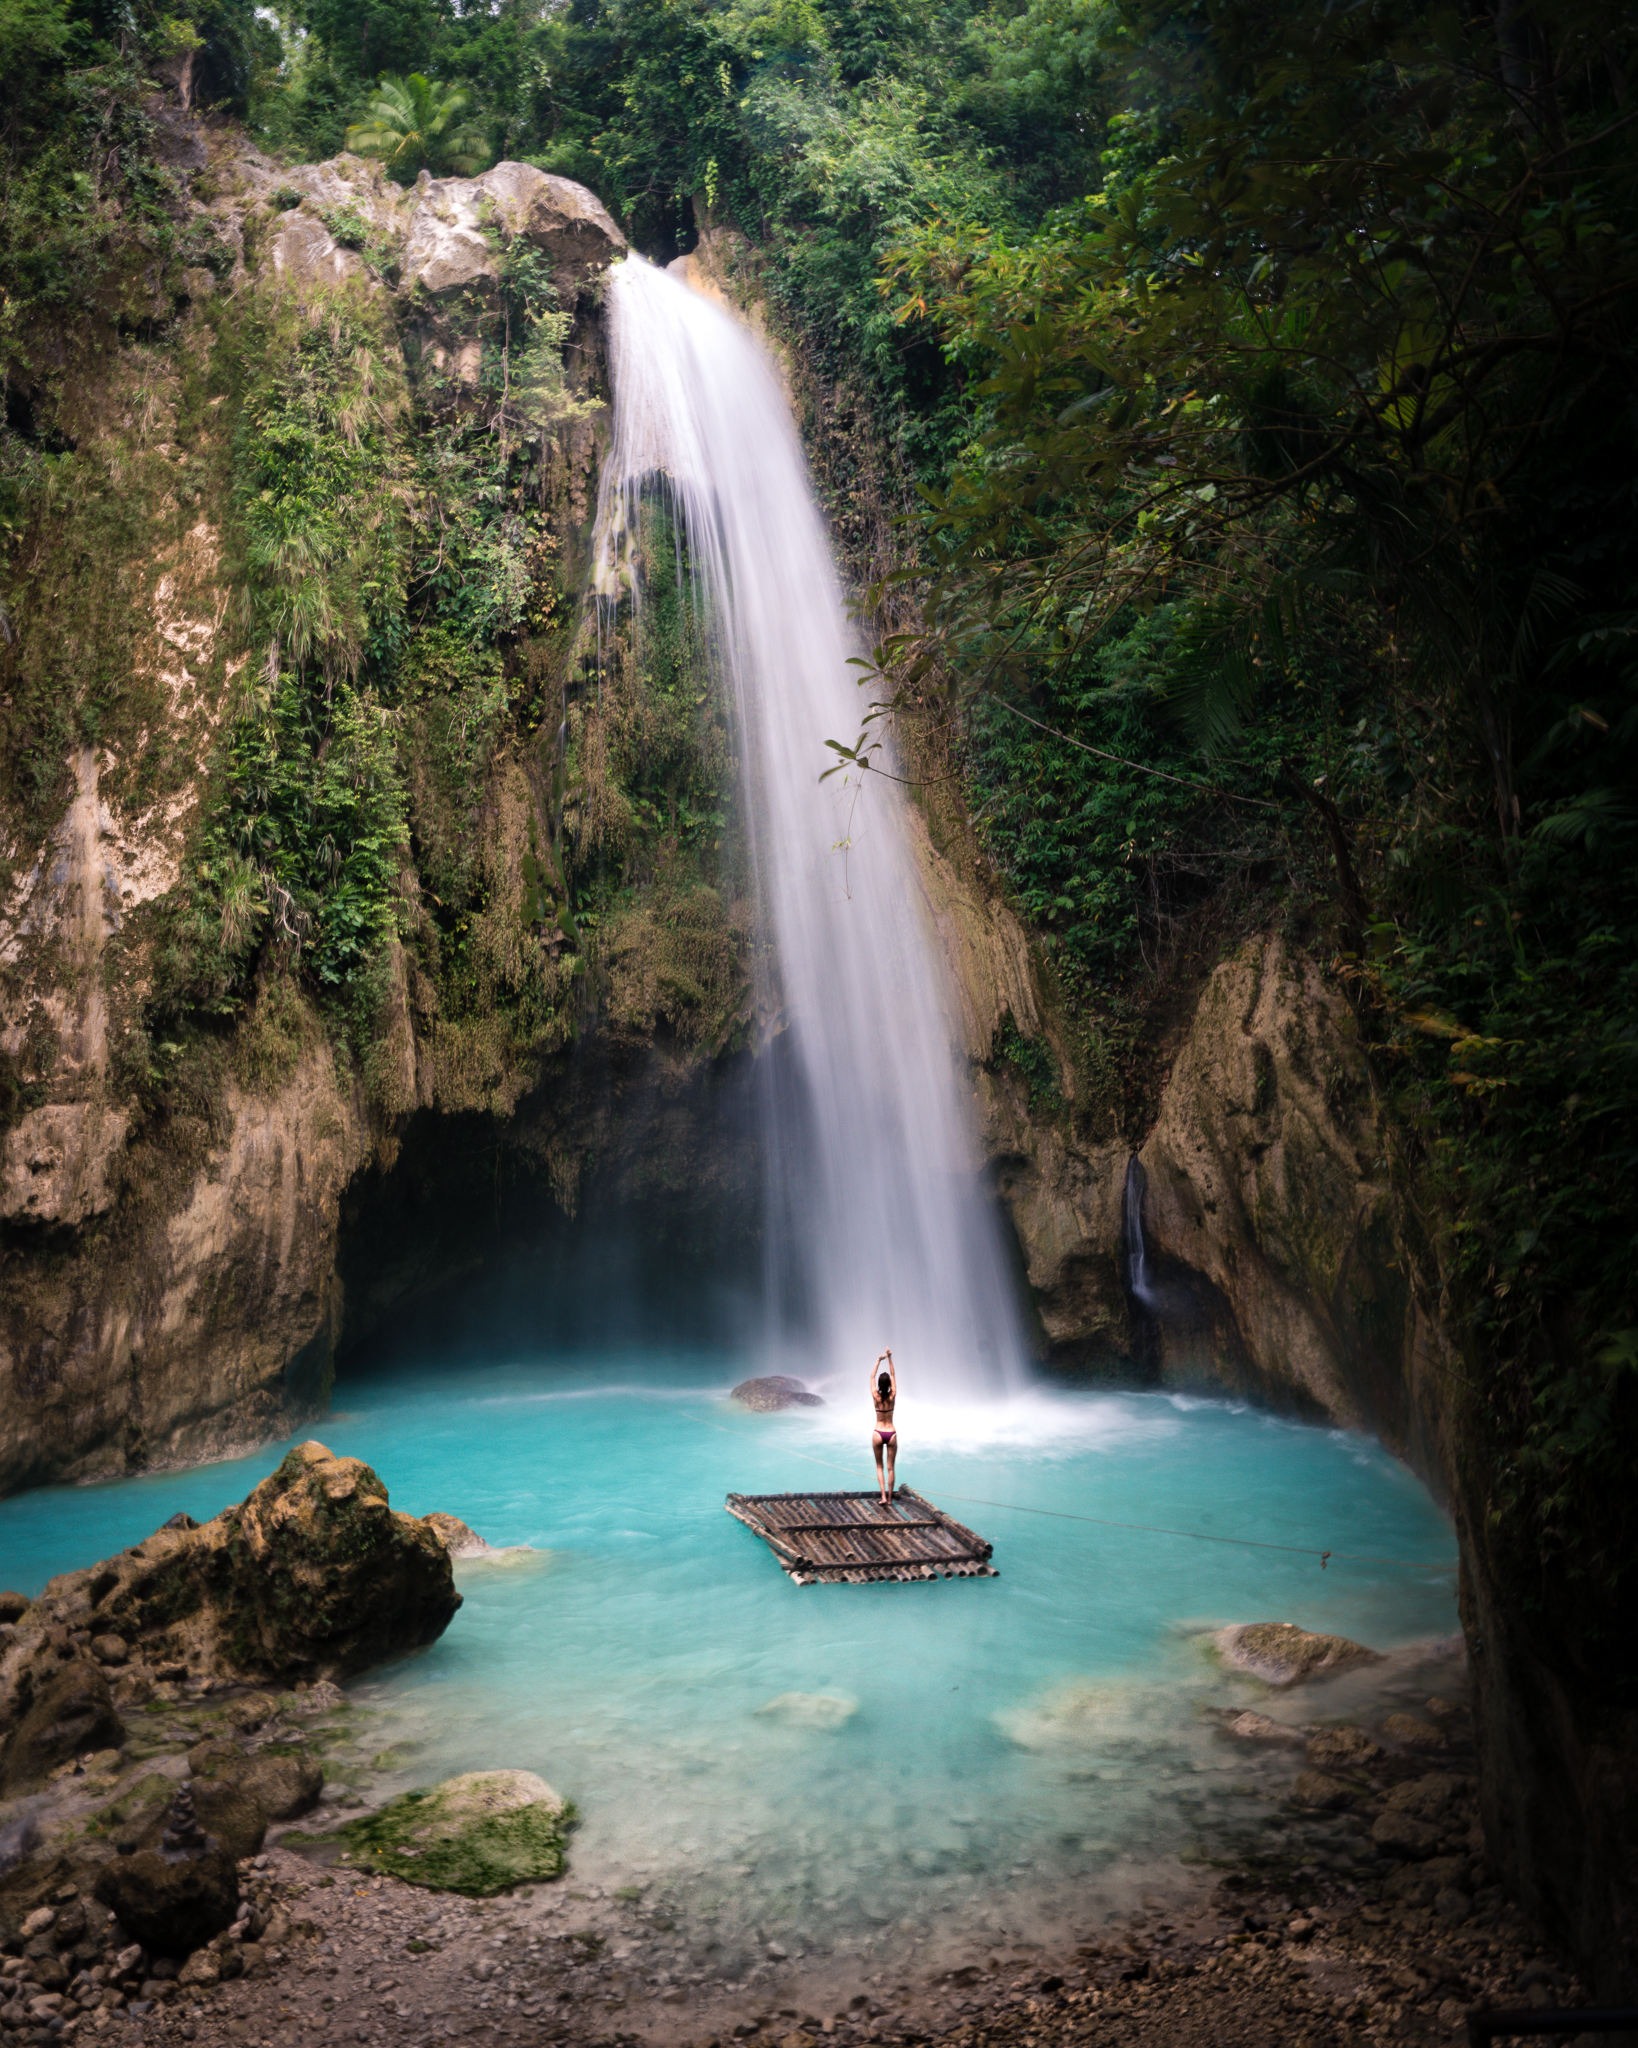 Inambakan Waterfall, Cebu, Philippines